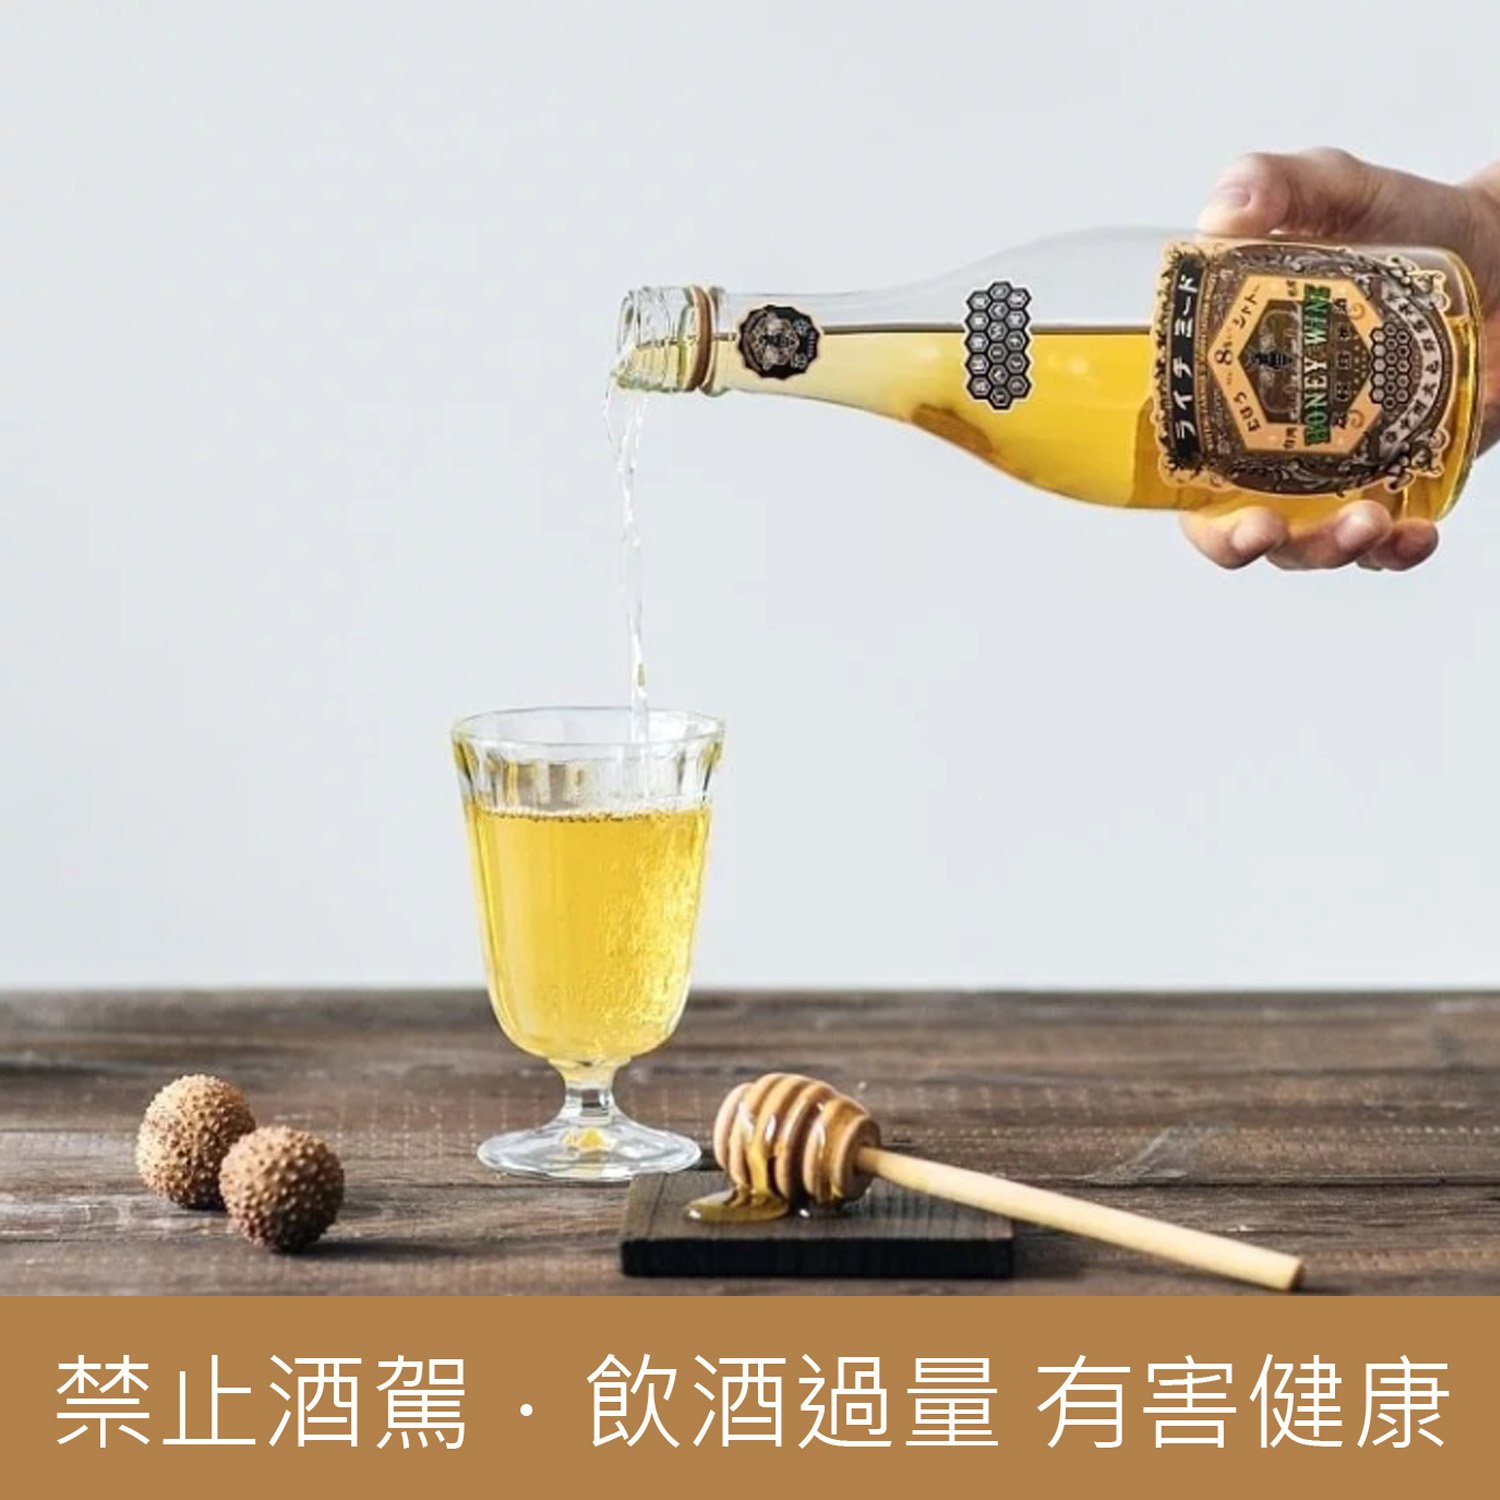 荔枝蜂蜜酒3.jpg